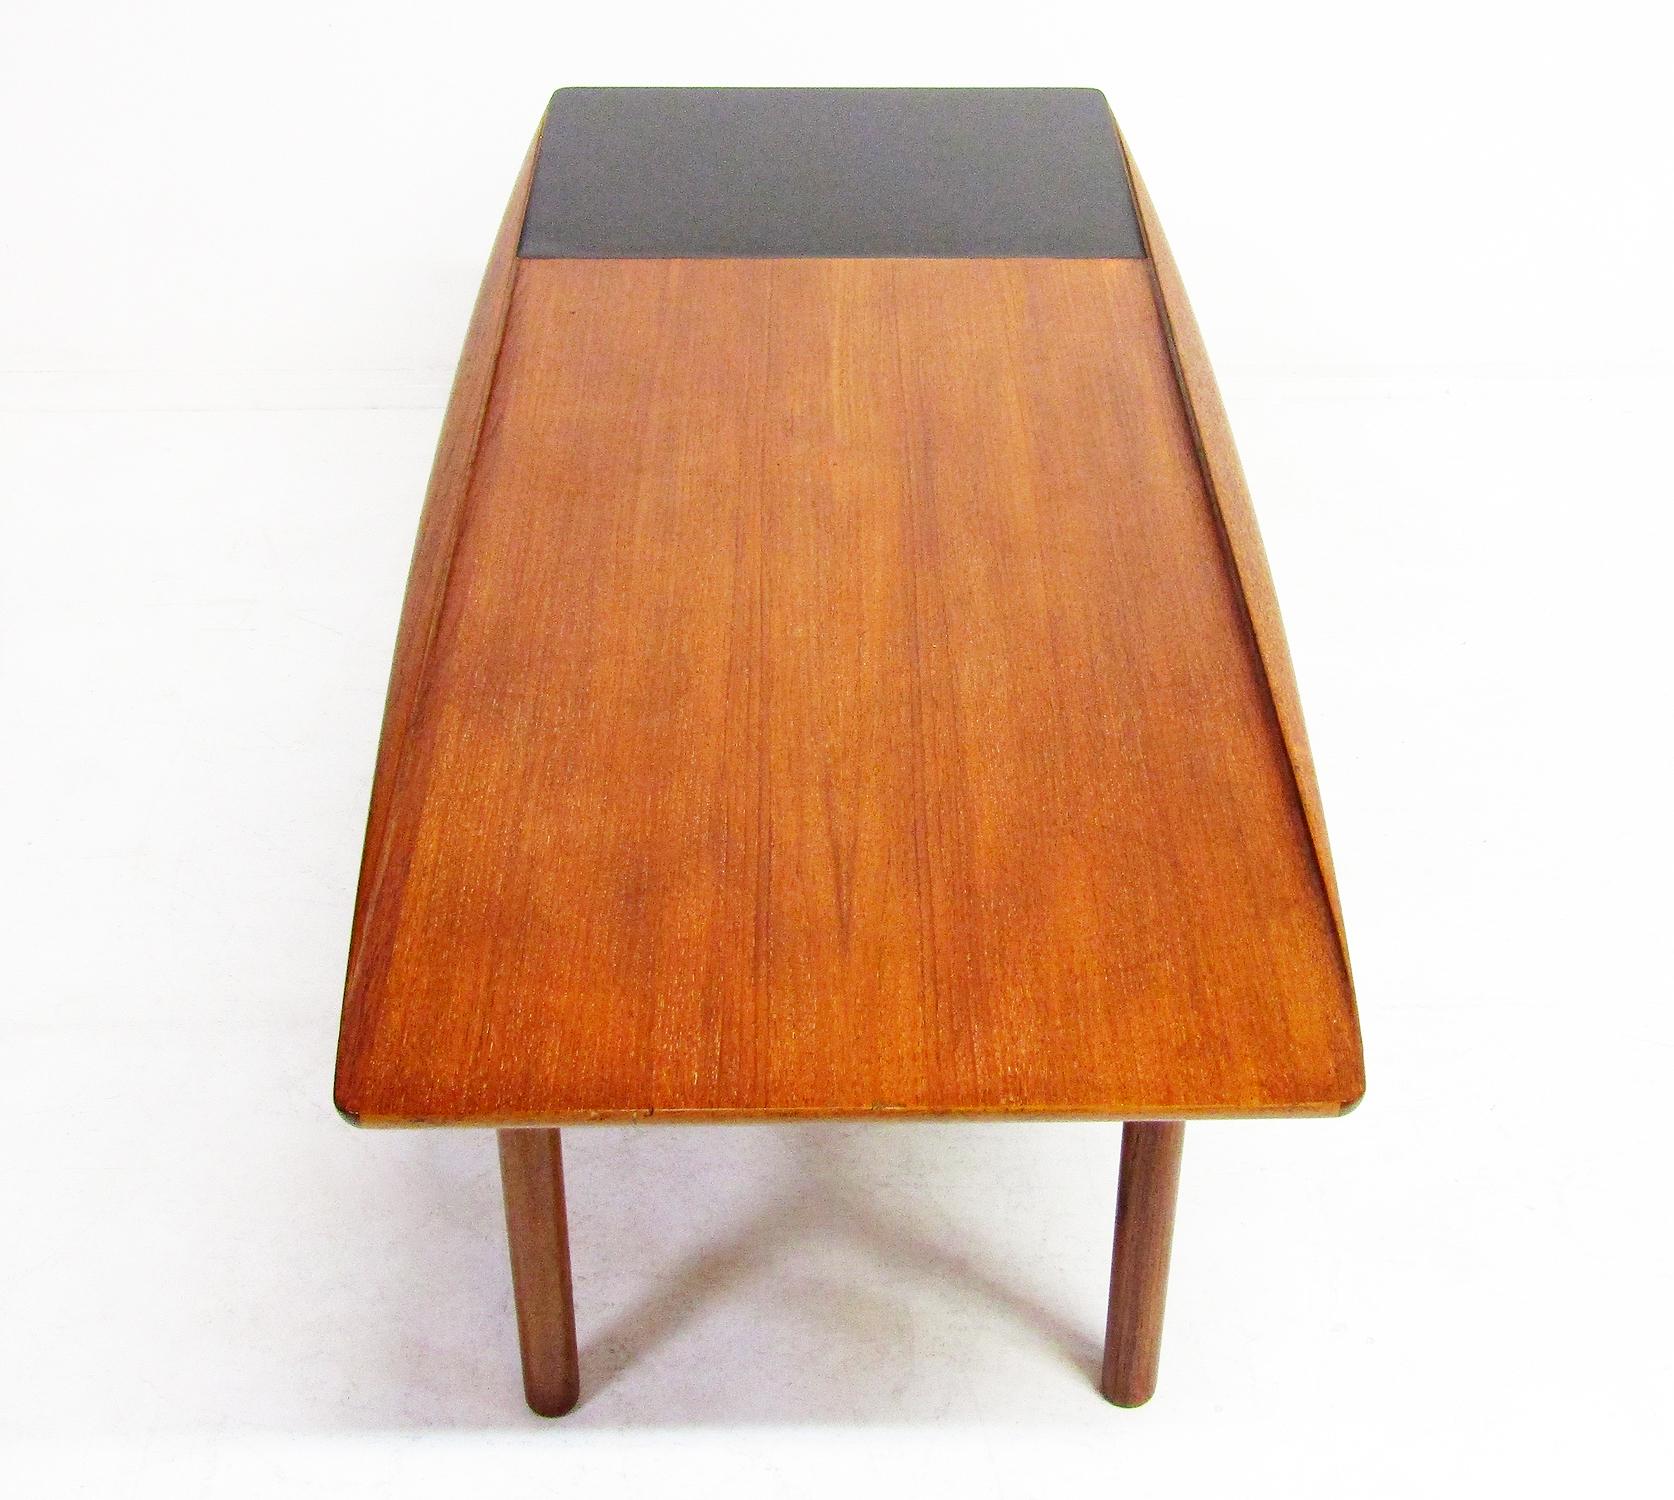 Table basse danoise en forme de planche de surf des années 1950 par Grete Jalk pour Poul Jeppesen.

Il a de beaux contours sculptés. Le teck est une riche nuance d'or rougeâtre.  Il y a un espace en formica noir pour les boissons

Le label Poul